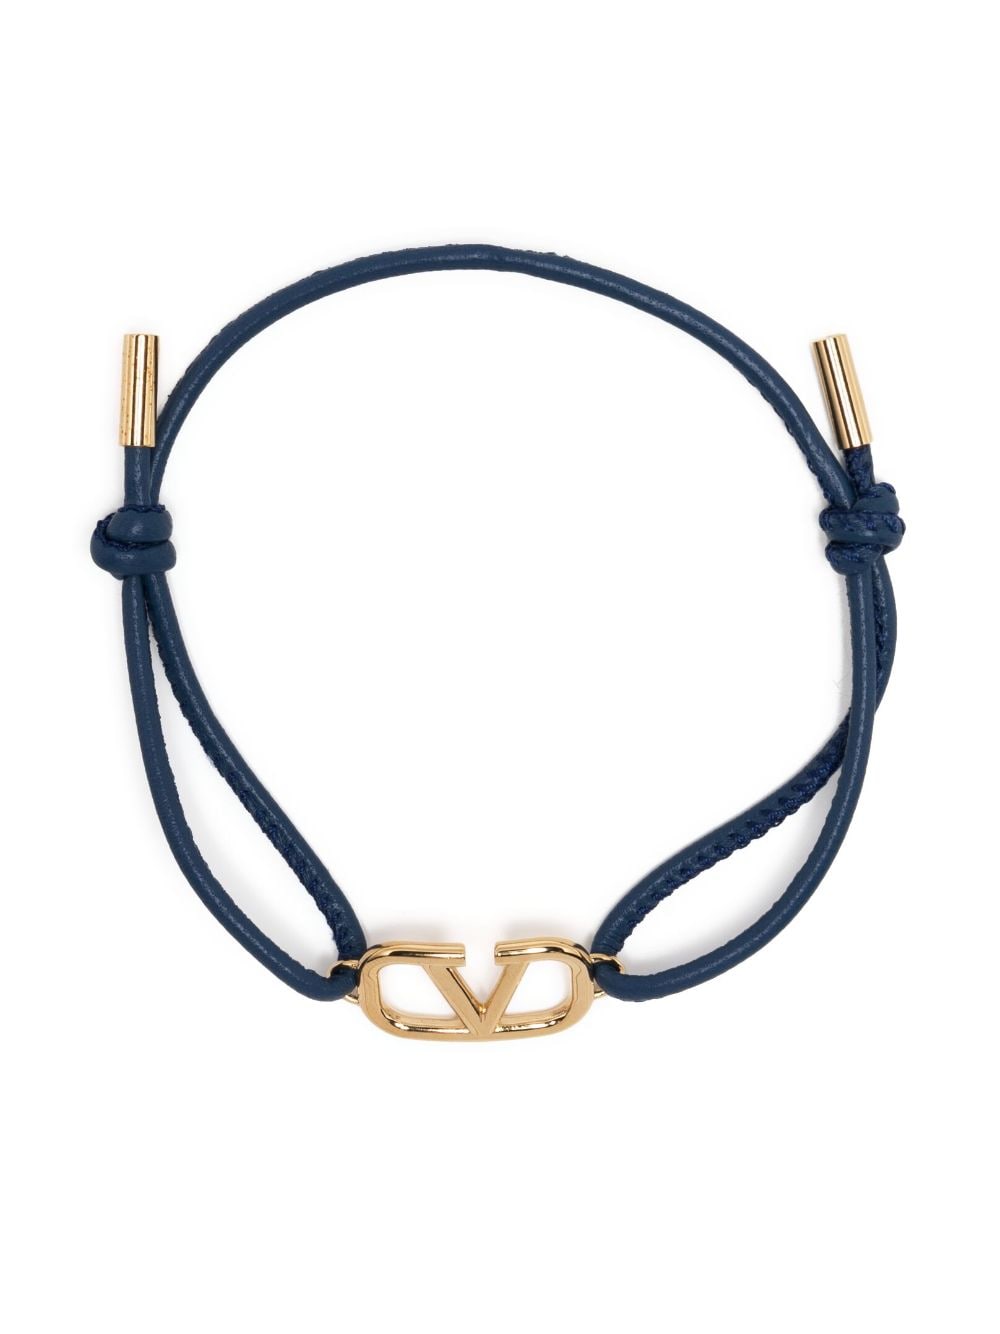 Valentino Garavani VLogo Signature leather cord bracelet - Blue von Valentino Garavani